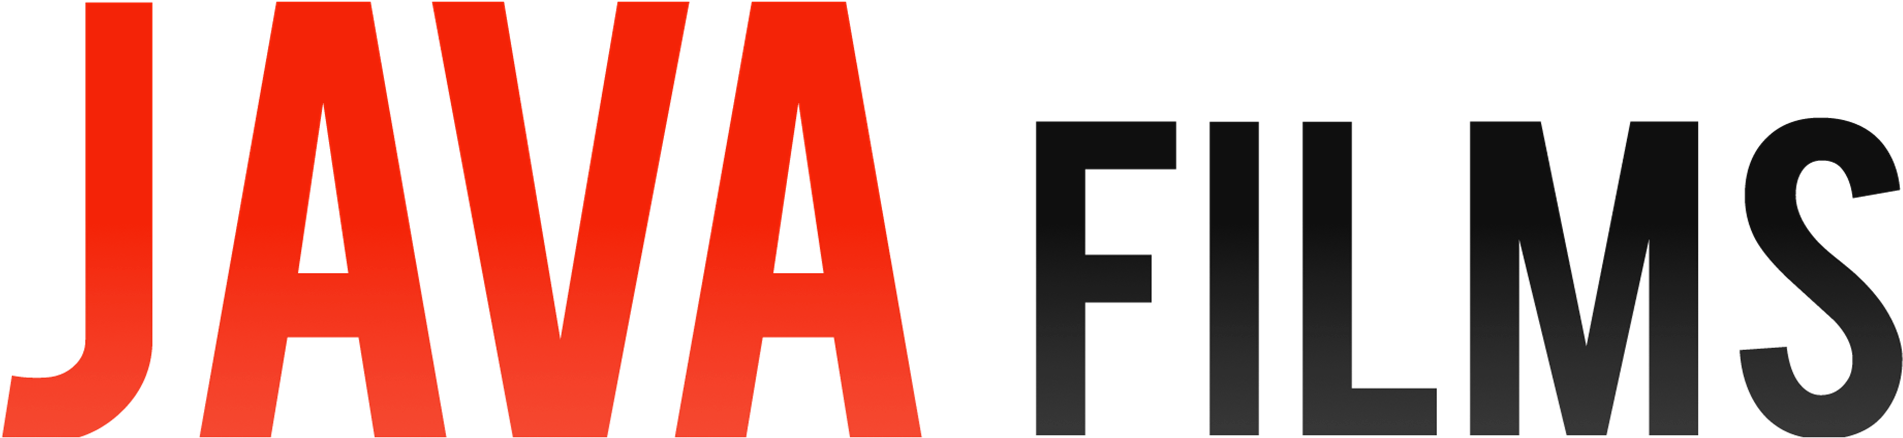 Java Films Logo Transparent Background PNG